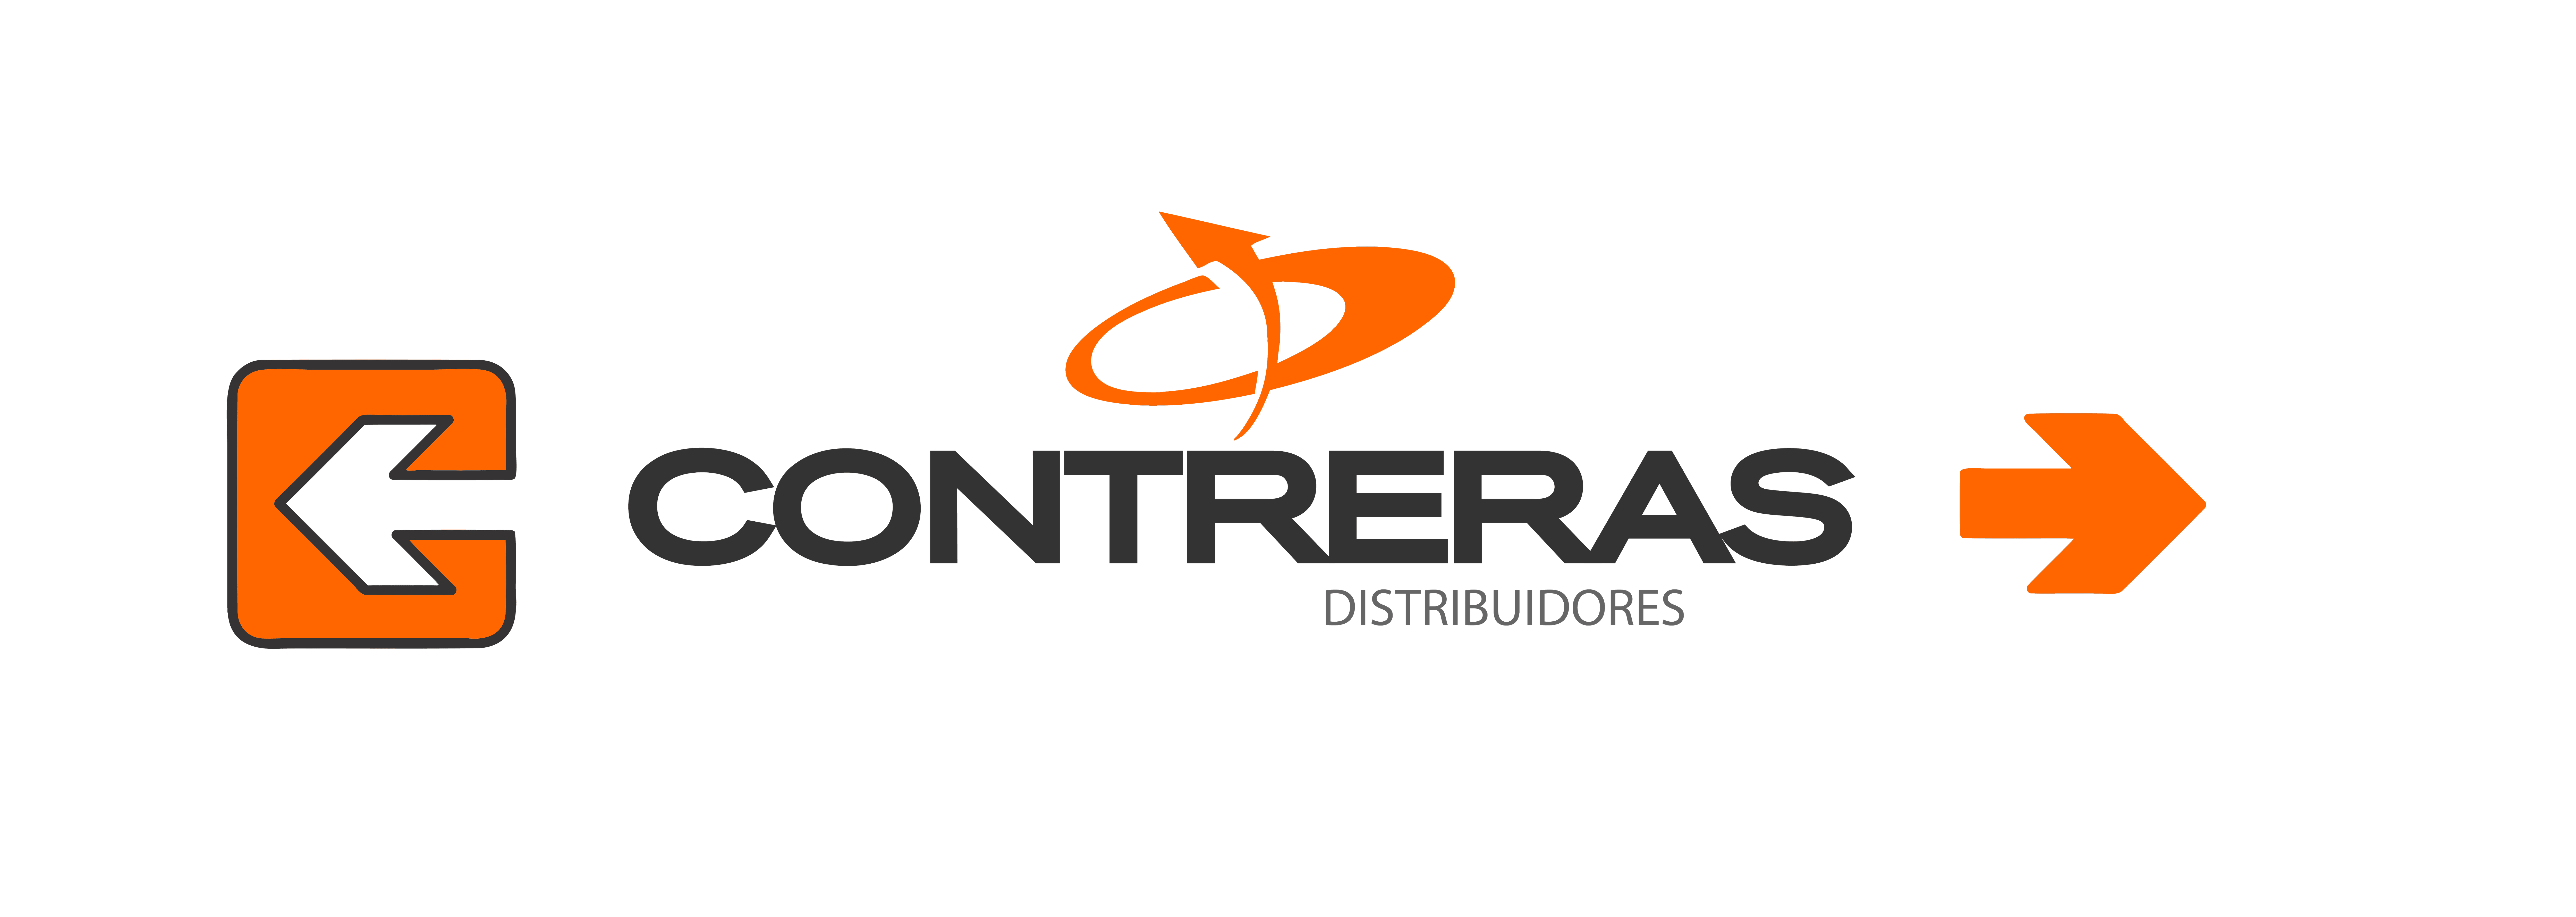 Logo Contreras Distribuidores Mayoristas